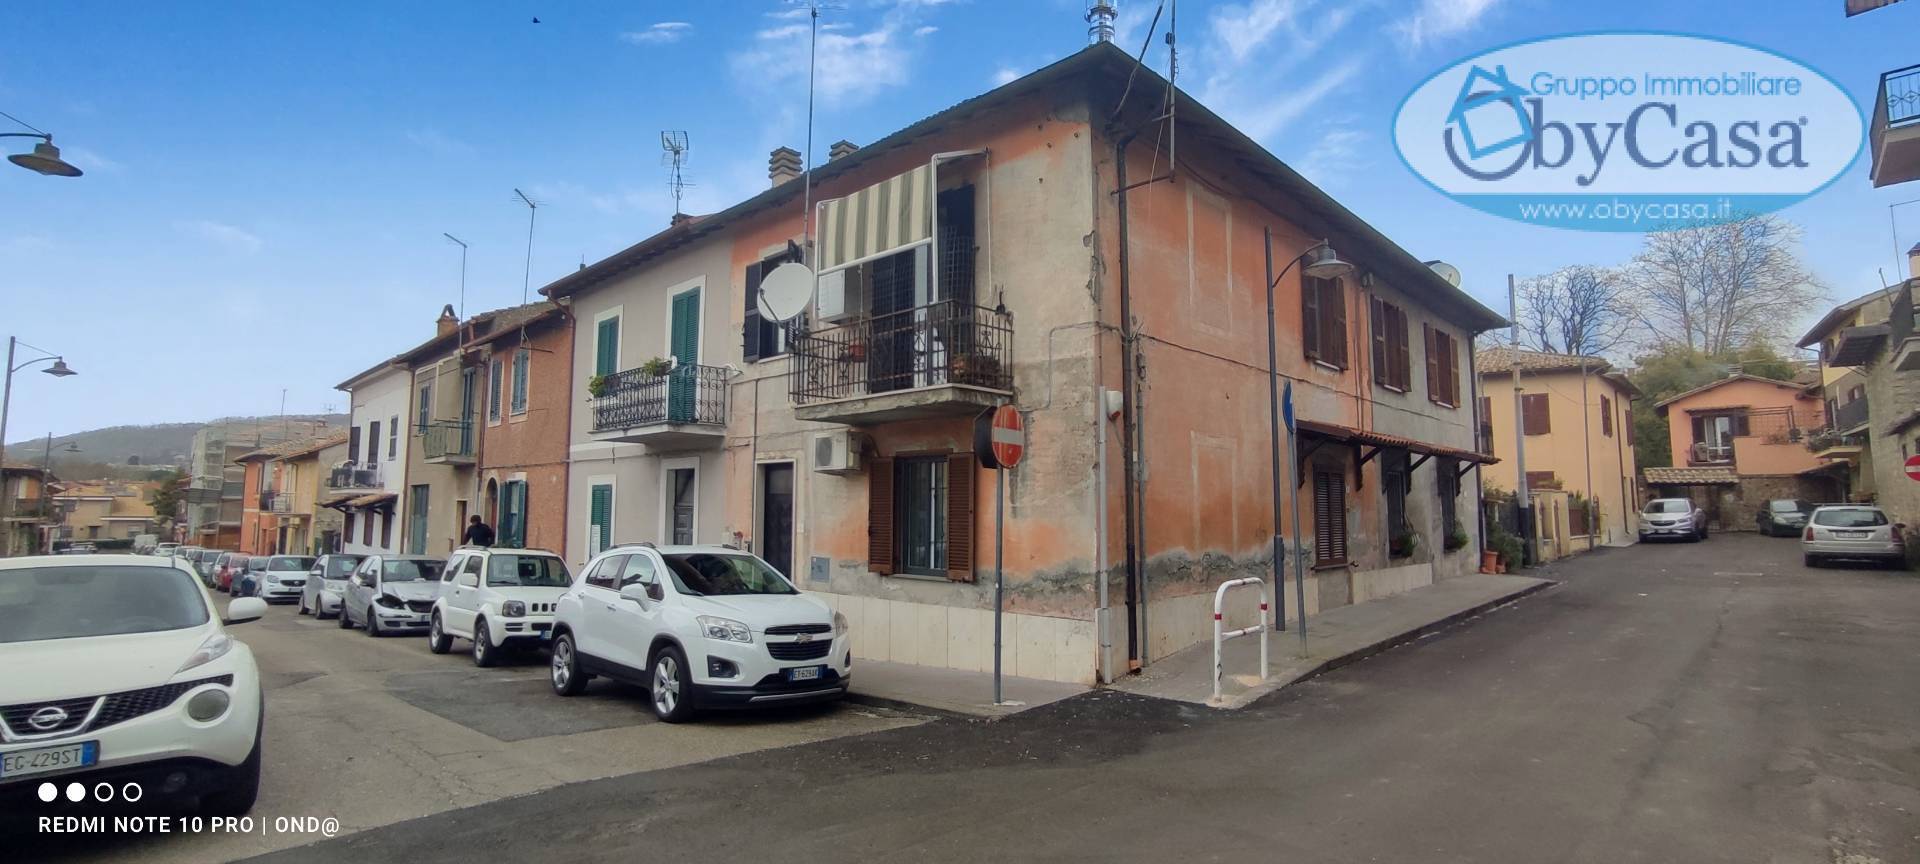 Appartamento in vendita a Manziana, 4 locali, zona Località: centro1, prezzo € 120.000 | PortaleAgenzieImmobiliari.it